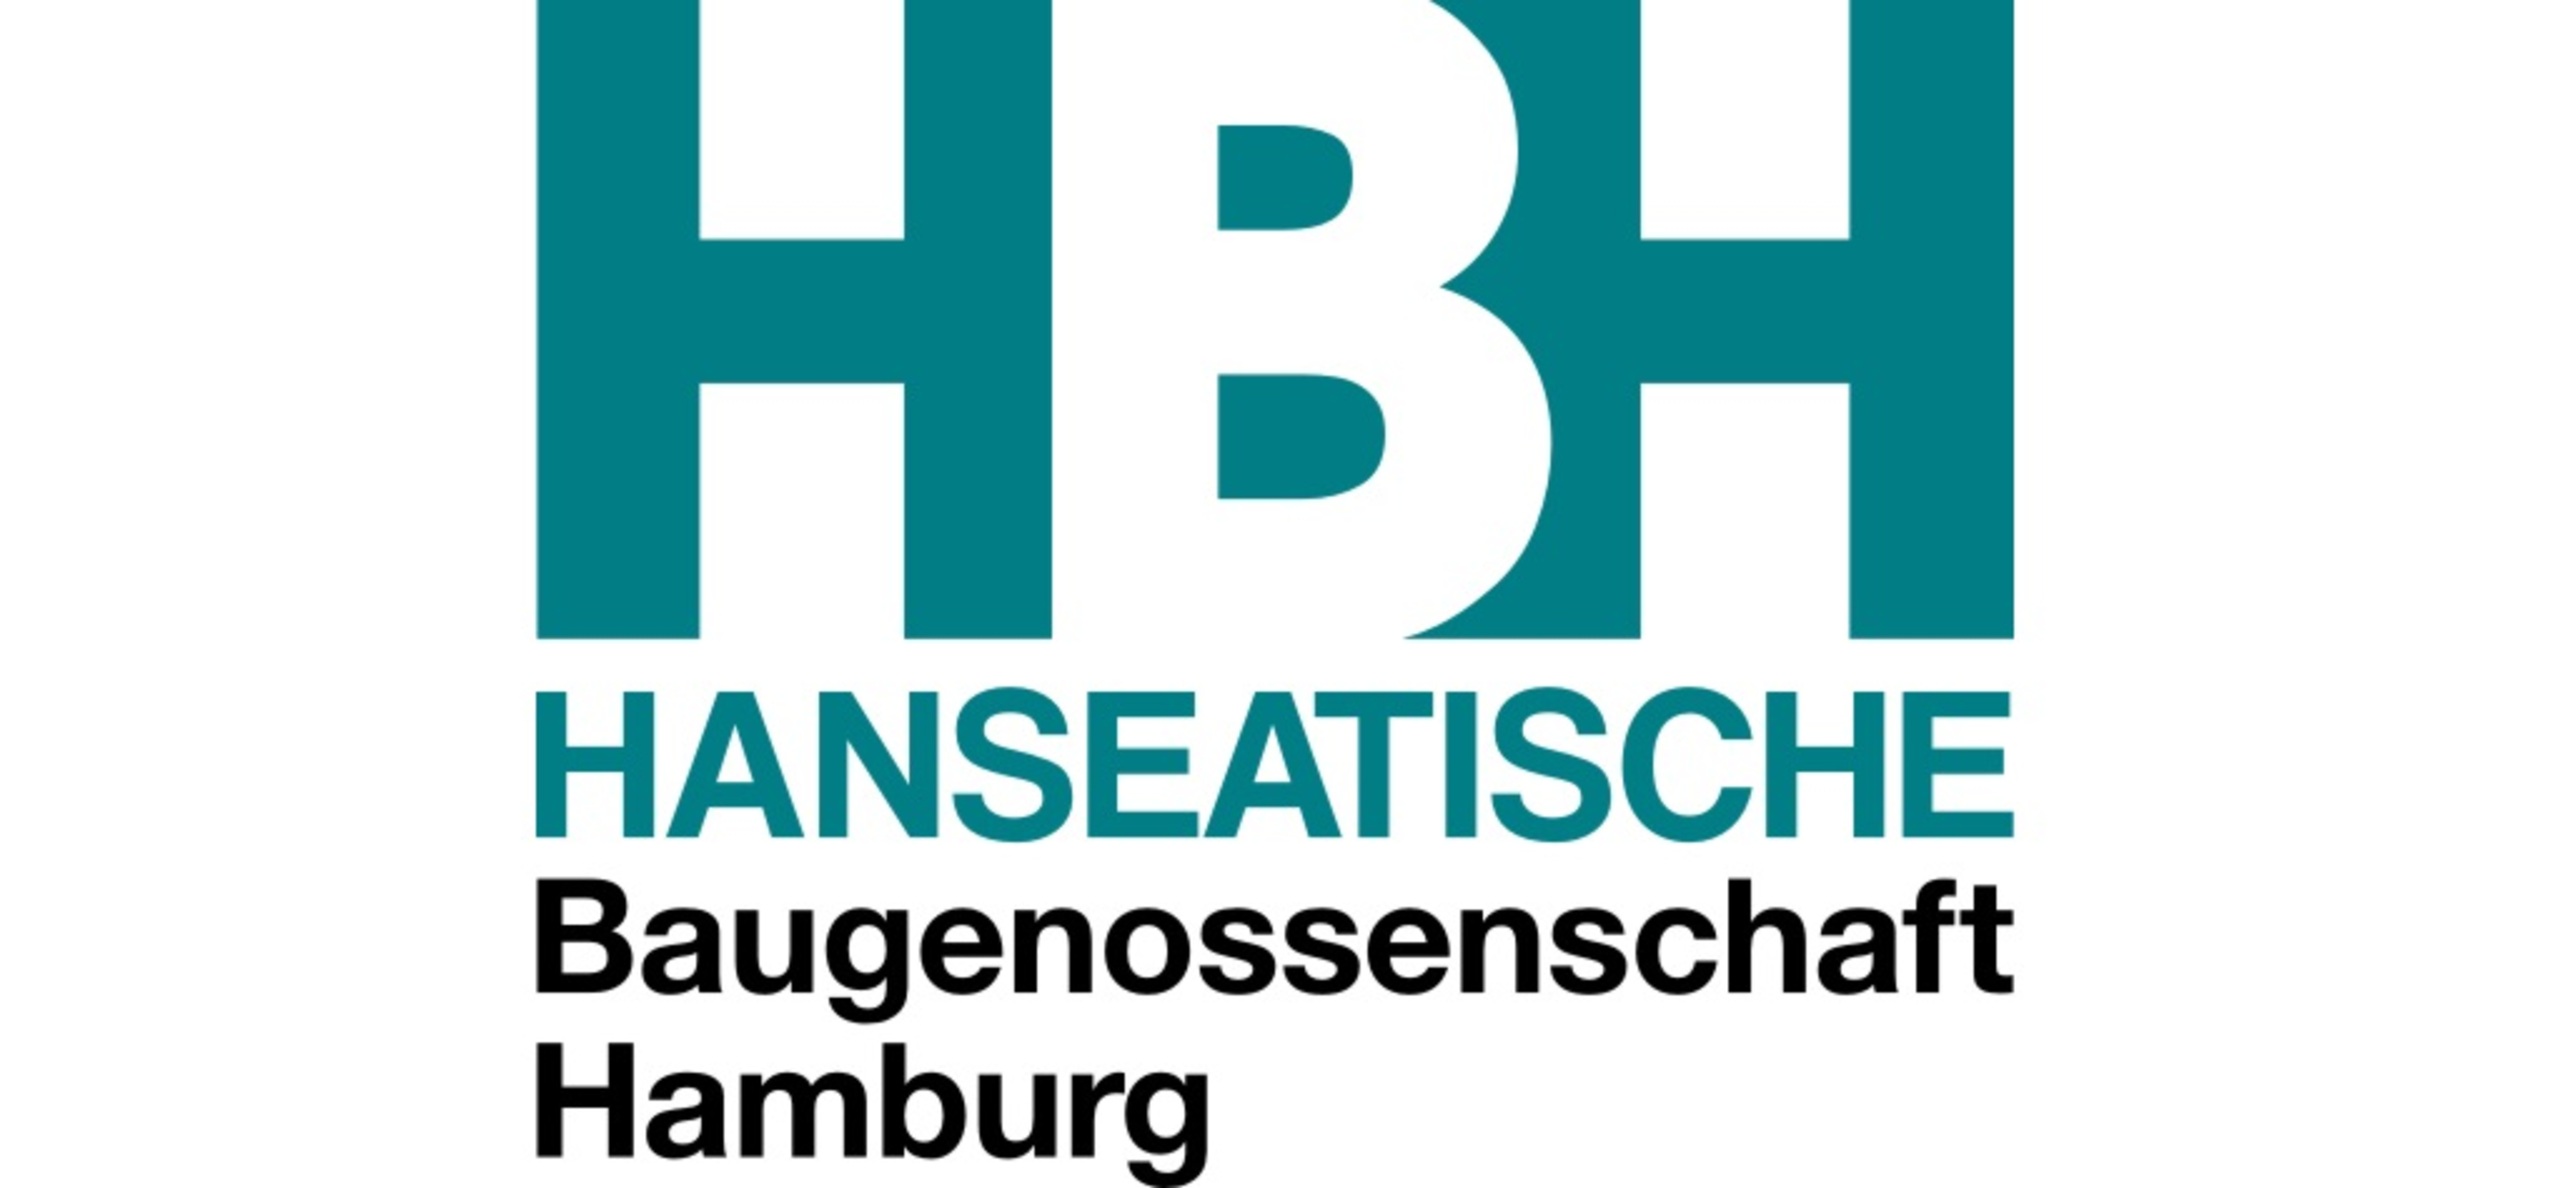 Hanseatische Baugenossenschaft Hamburg